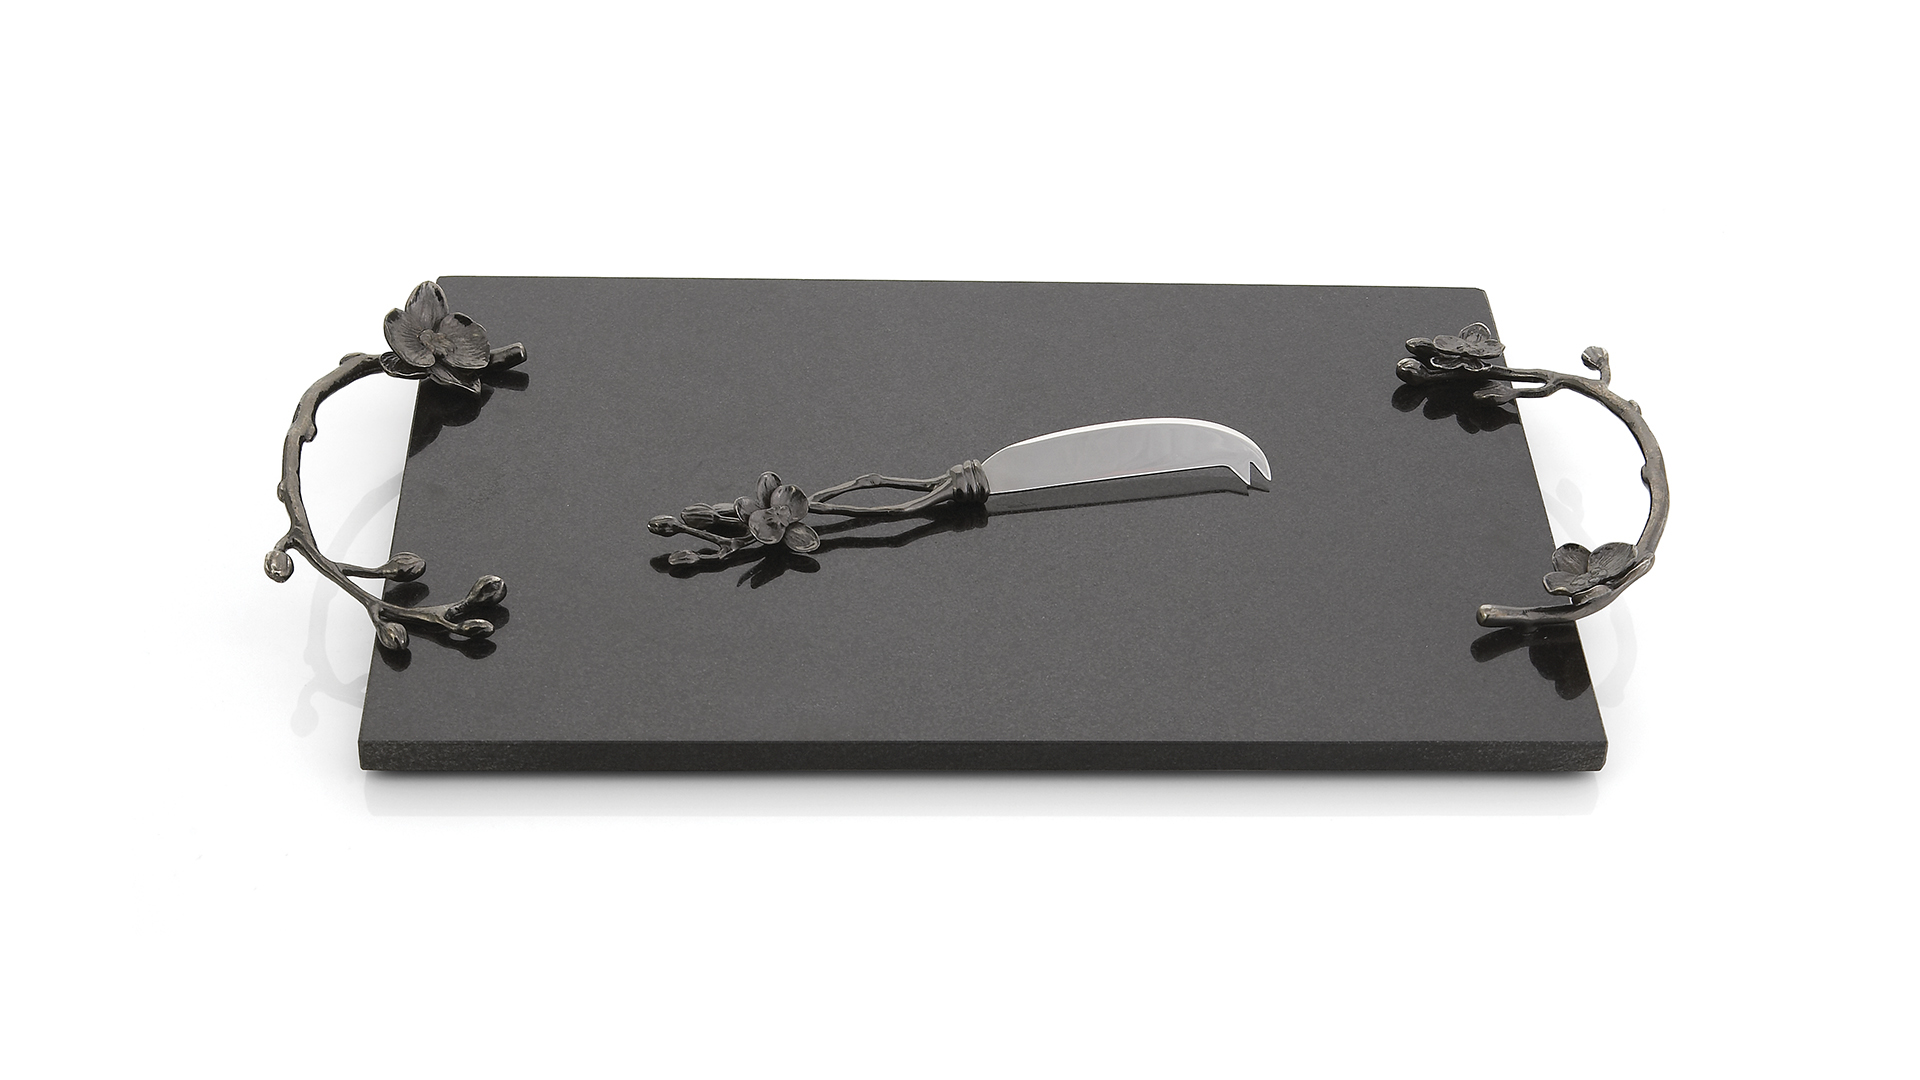 Доска для сыра прямоугольная с ножом  Michael Aram Чёрная орхидея 46x25 см, чёрная